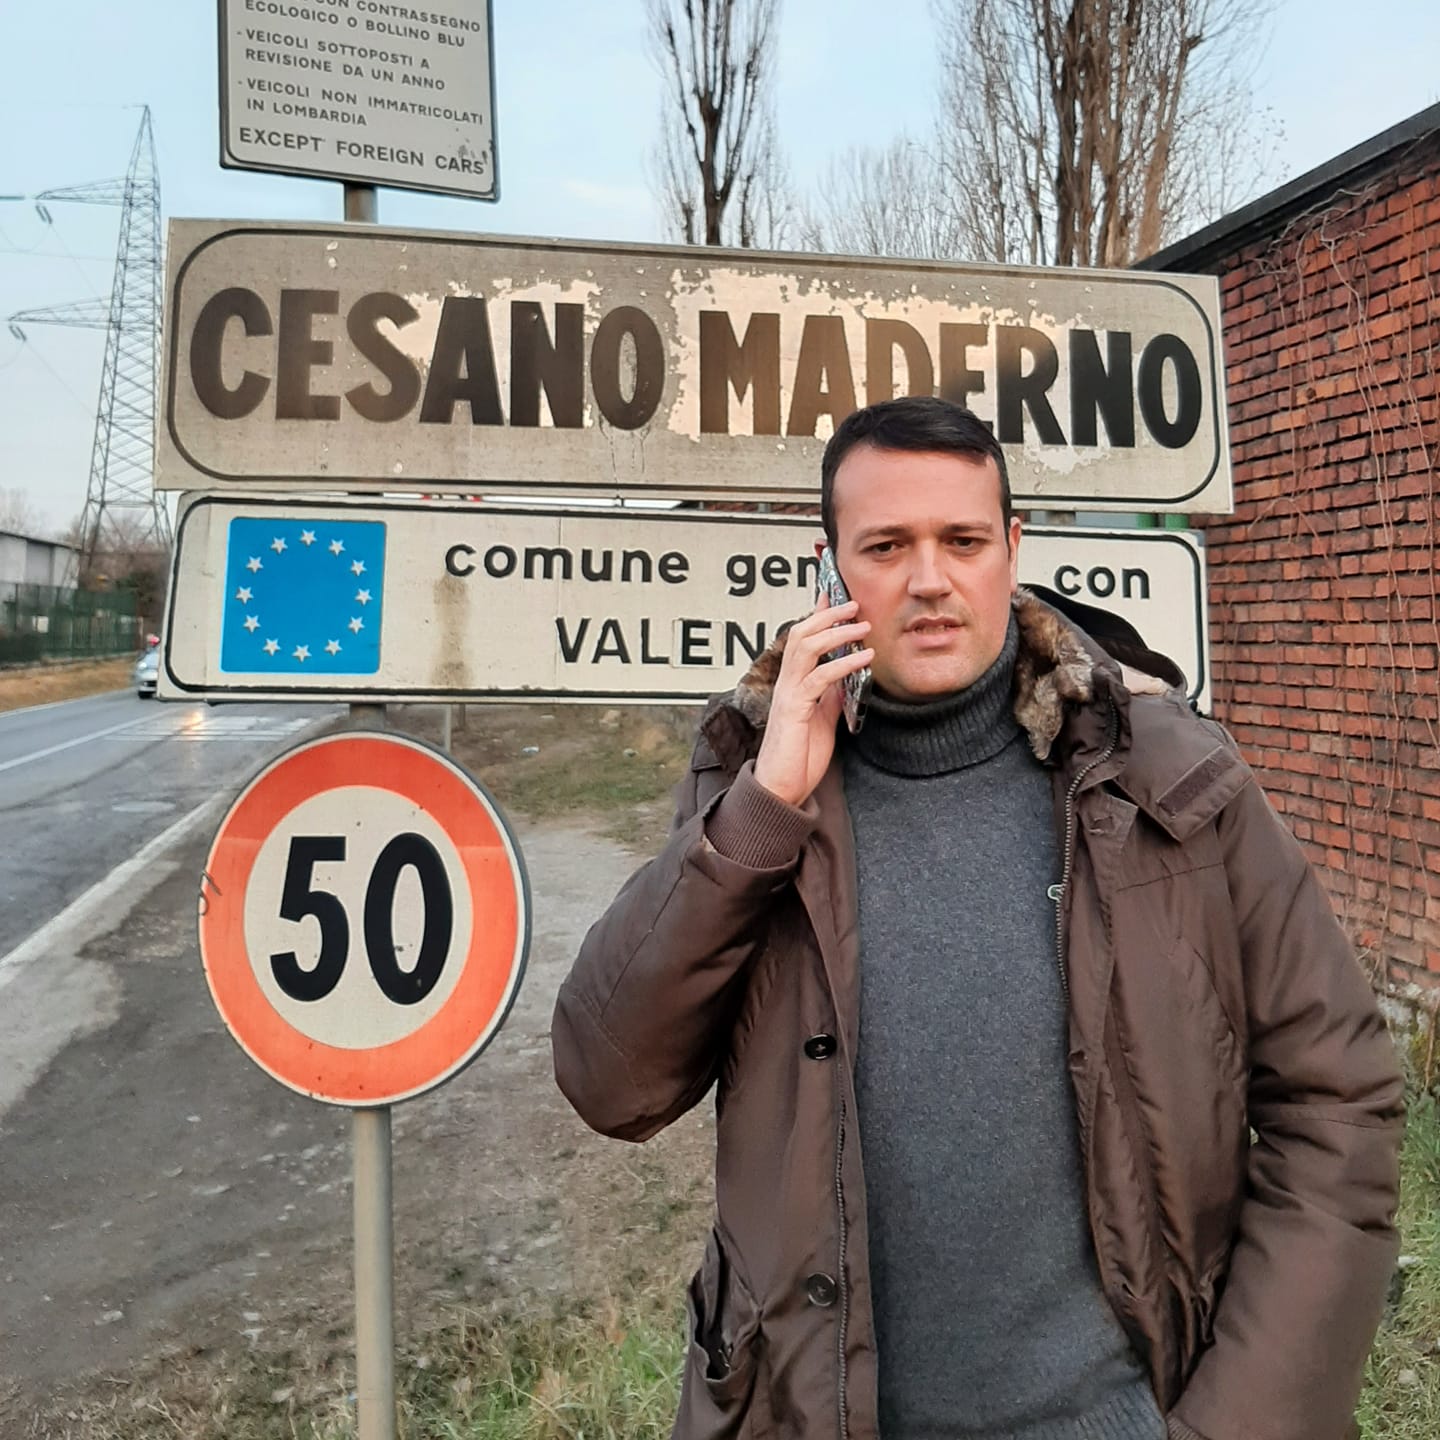 La polizia locale di Cesano sconfina a caccia di spacciatori